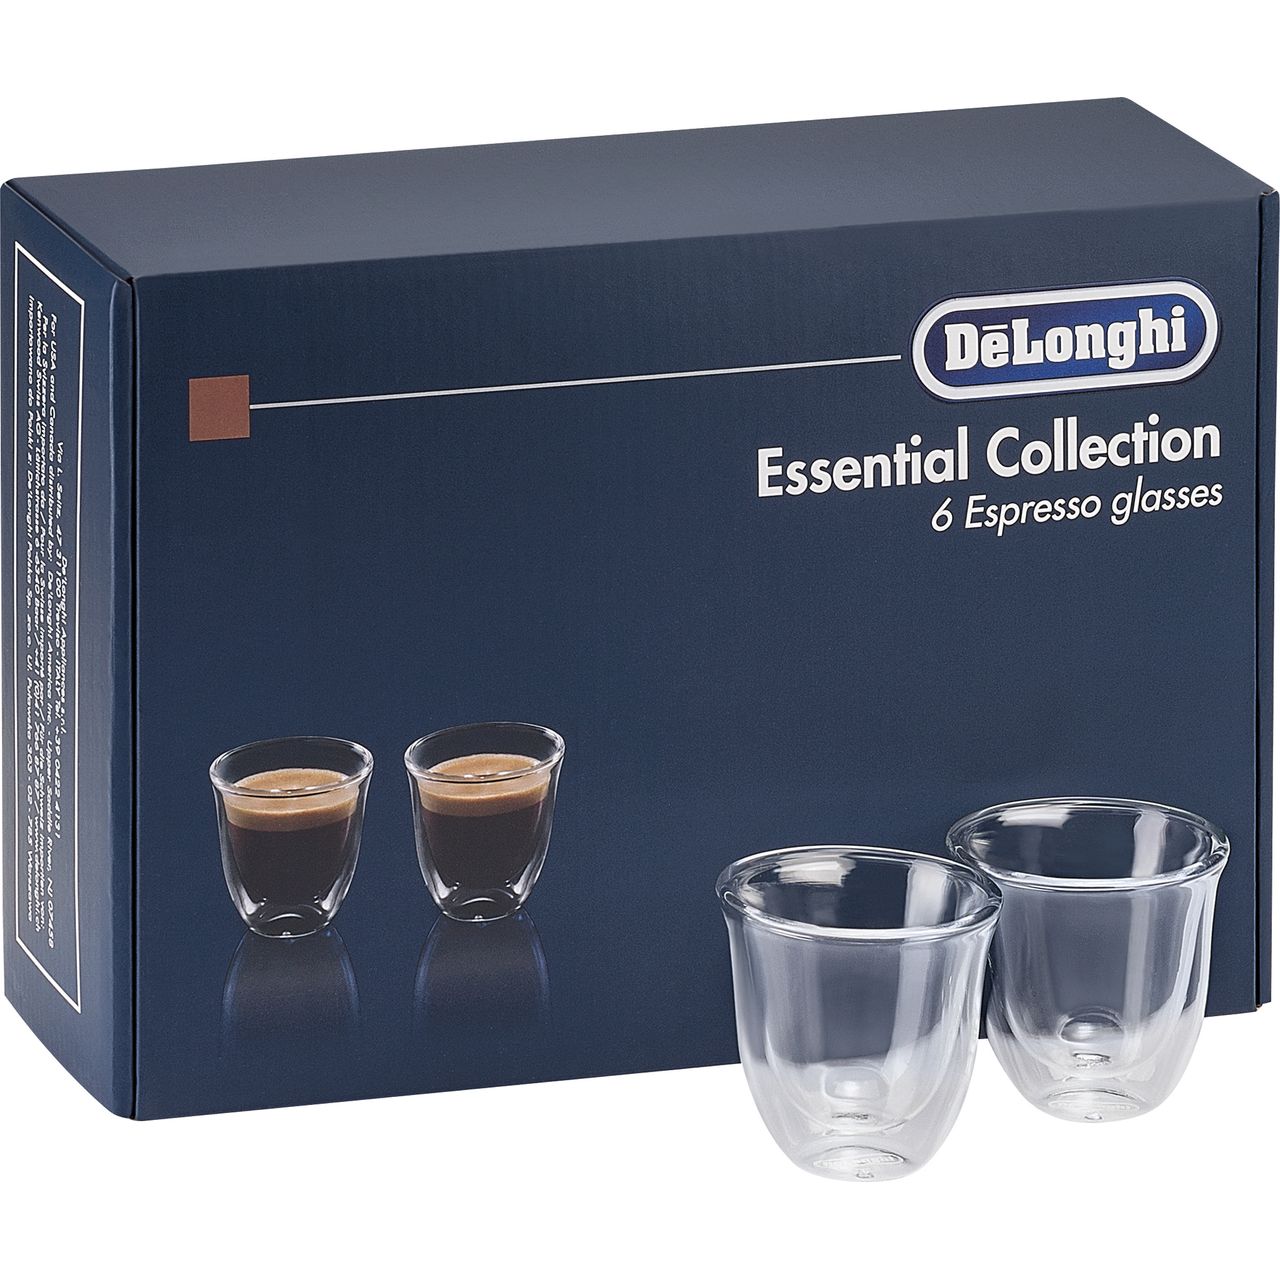 De'Longhi Essentials DLKC300 Espresso Glasses Review